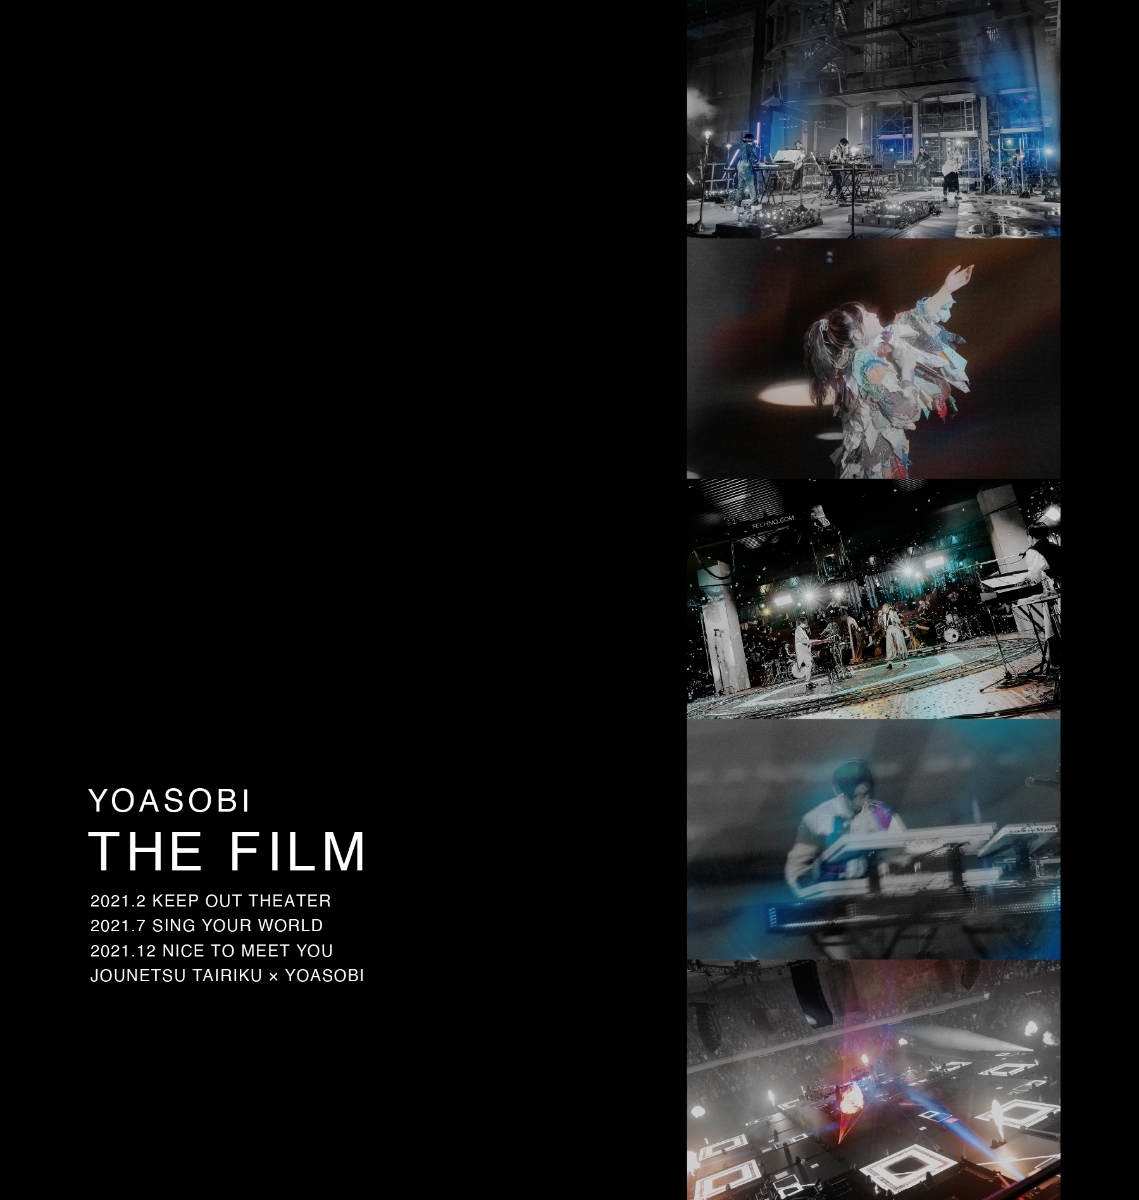 楽天ブックス: THE FILM (完全生産限定盤) 【Blu-ray】 - YOASOBI